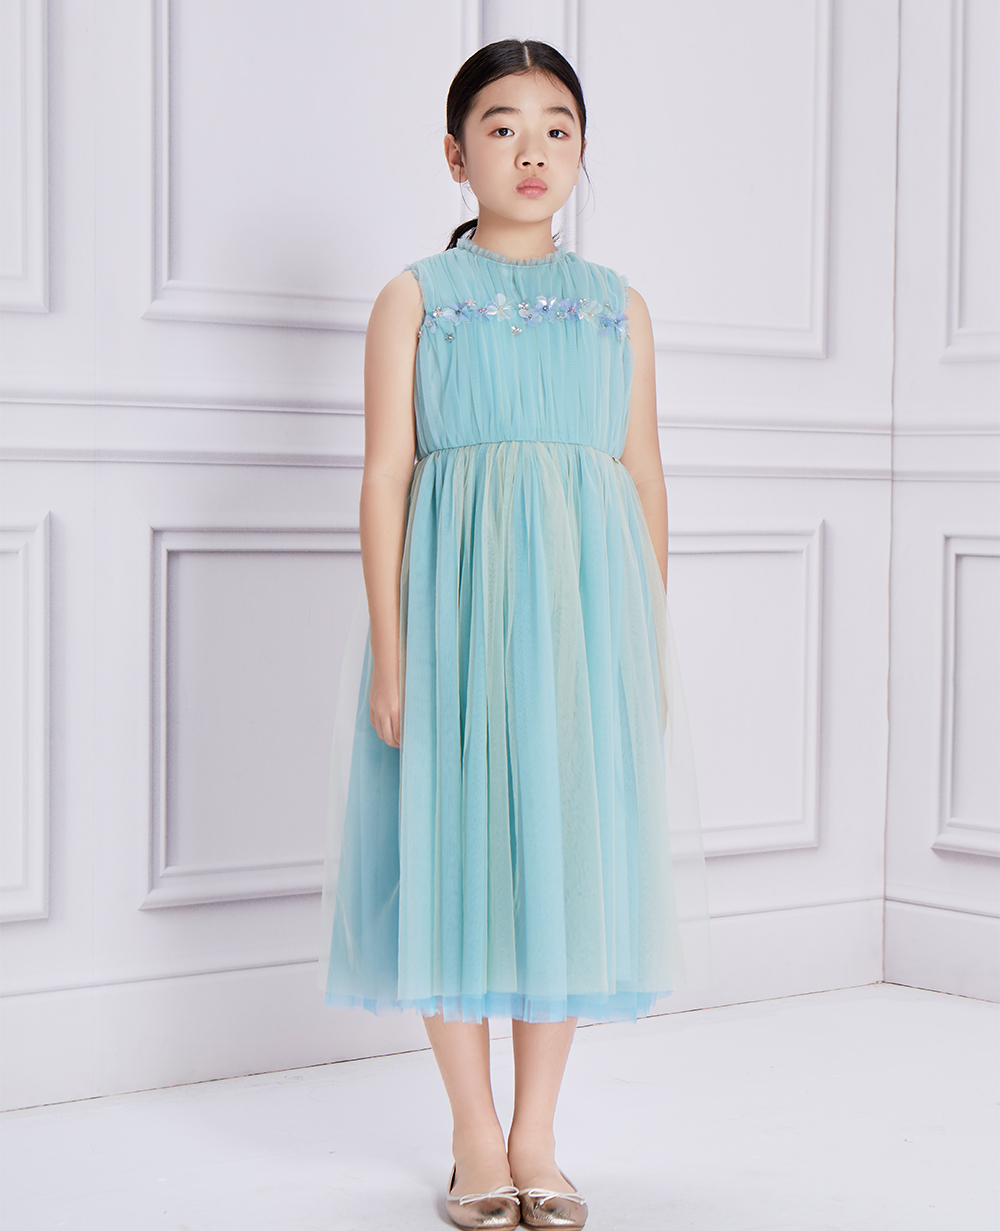 Aqua Tulle Lace Dress